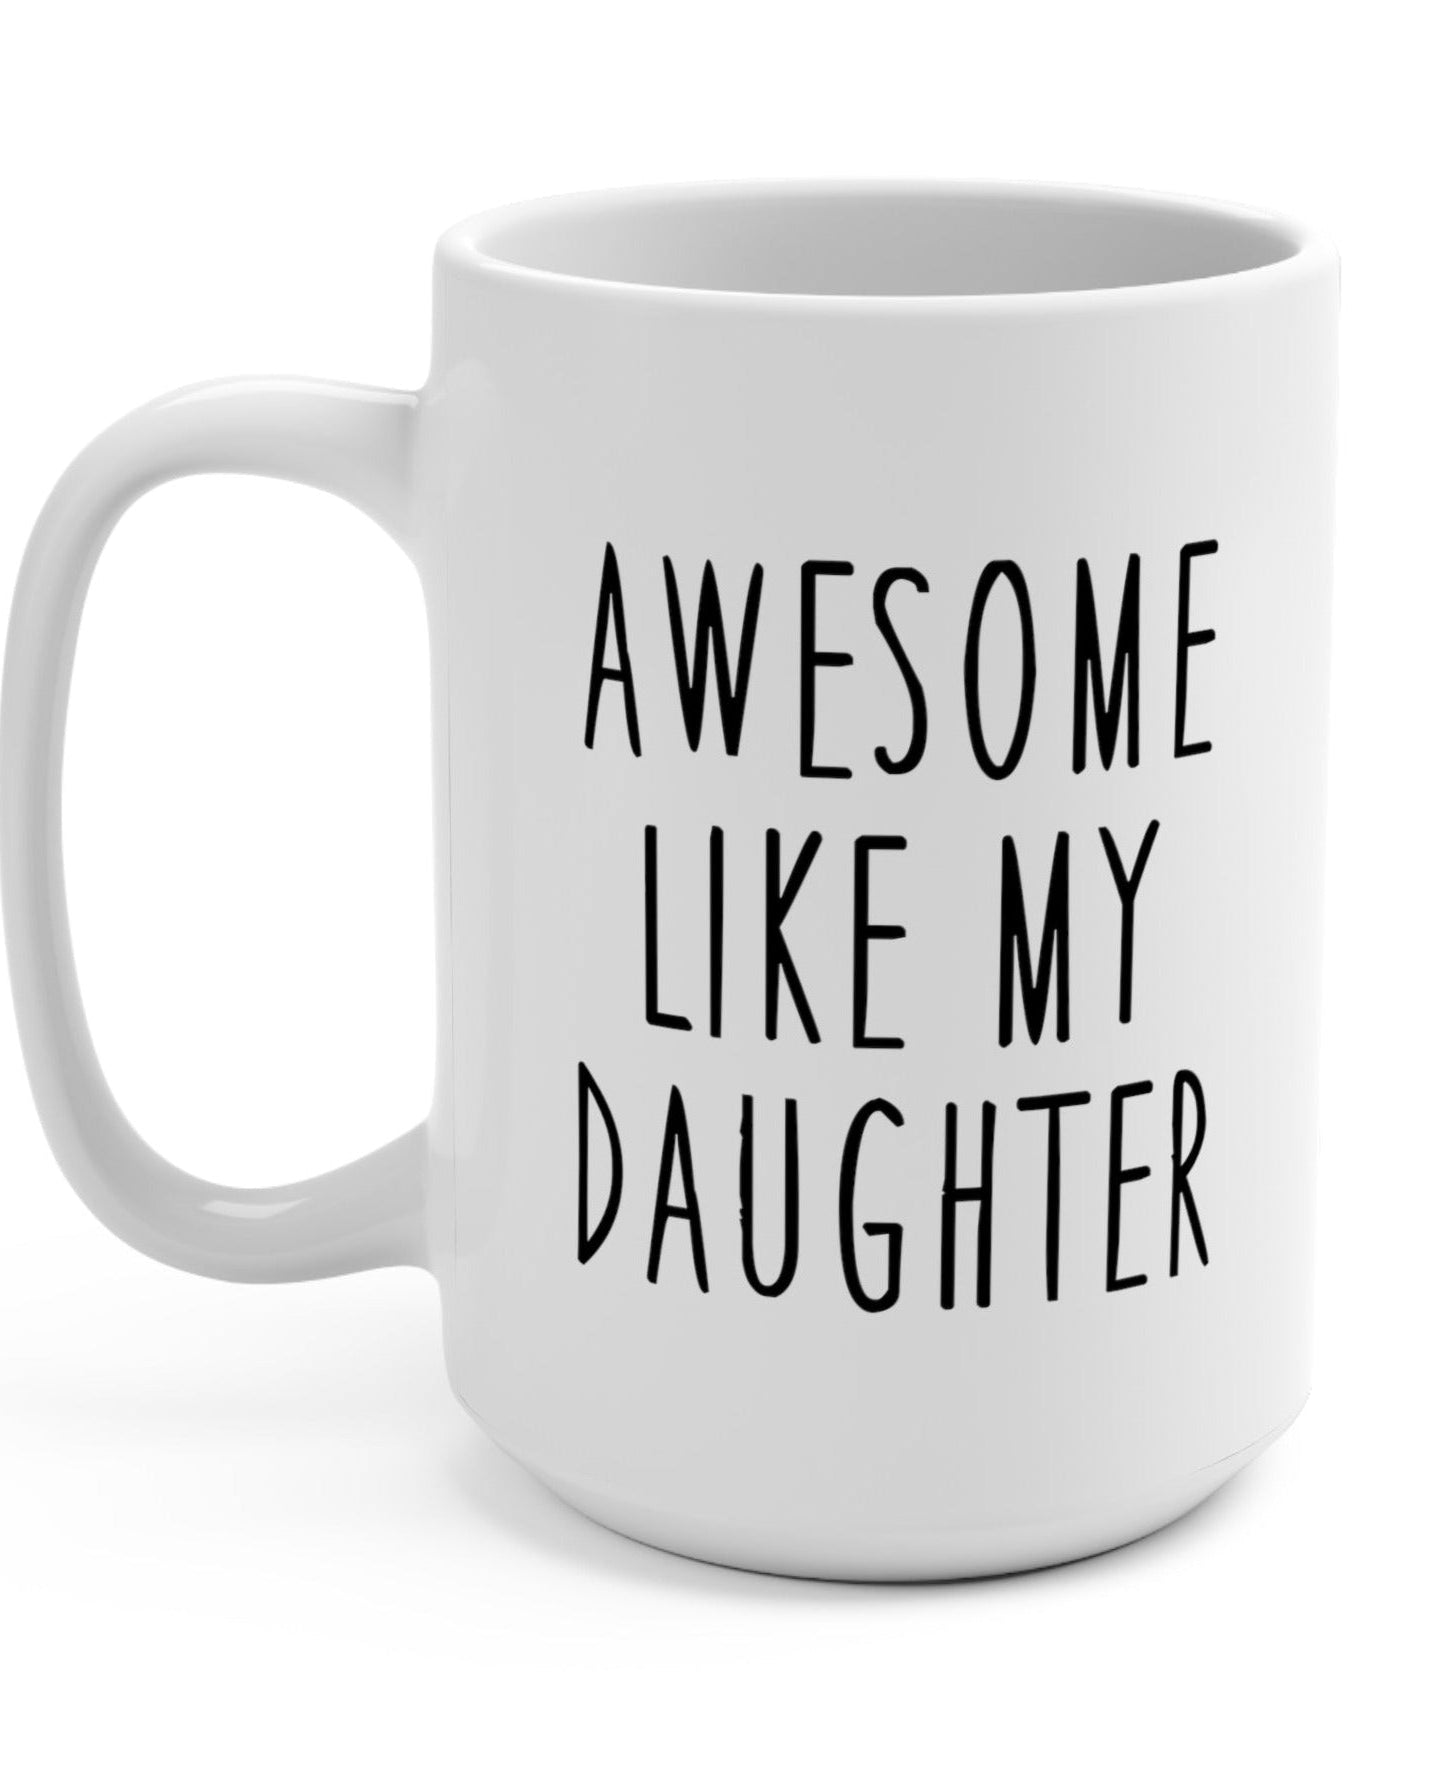 Awesome Like My Daughter Mug - UntamedEgo LLC.